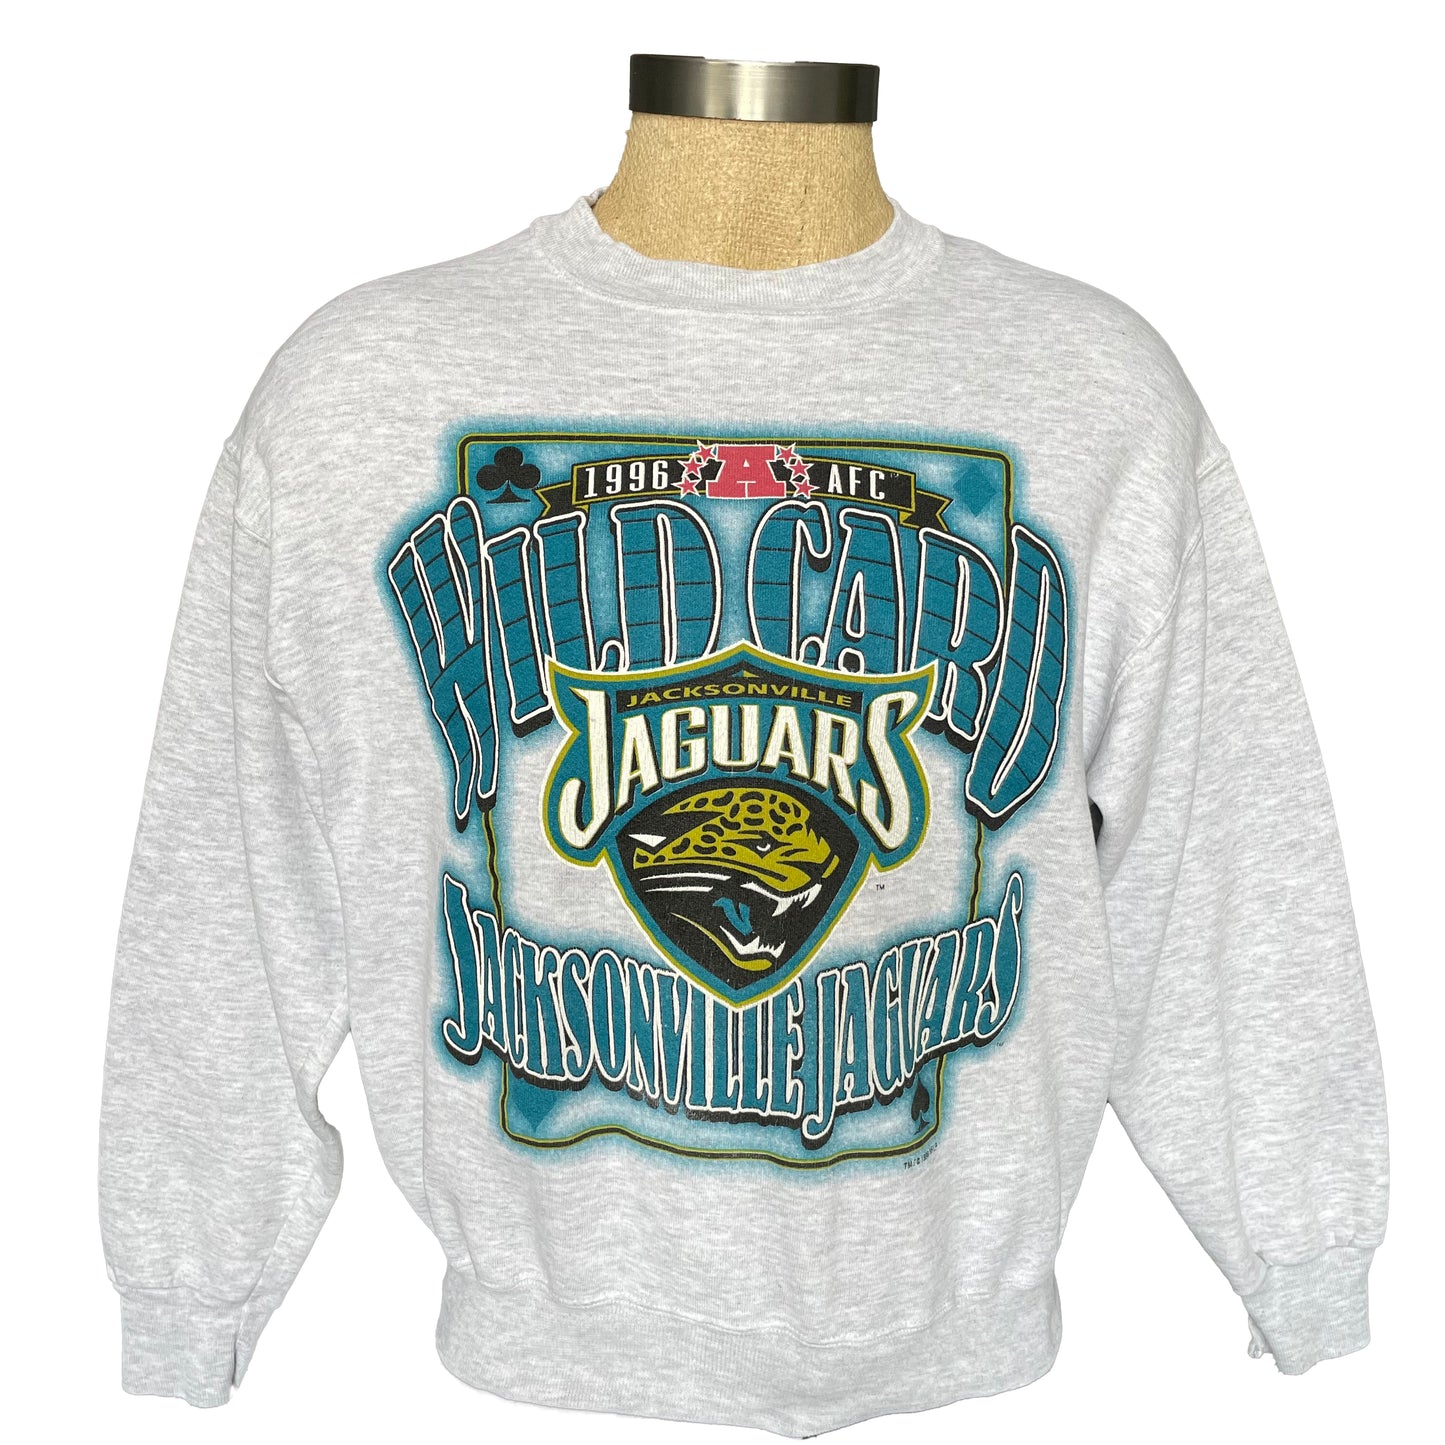 Vintage Jacksonville Jaguars 1996 Wild Card sweatshirt size Medium